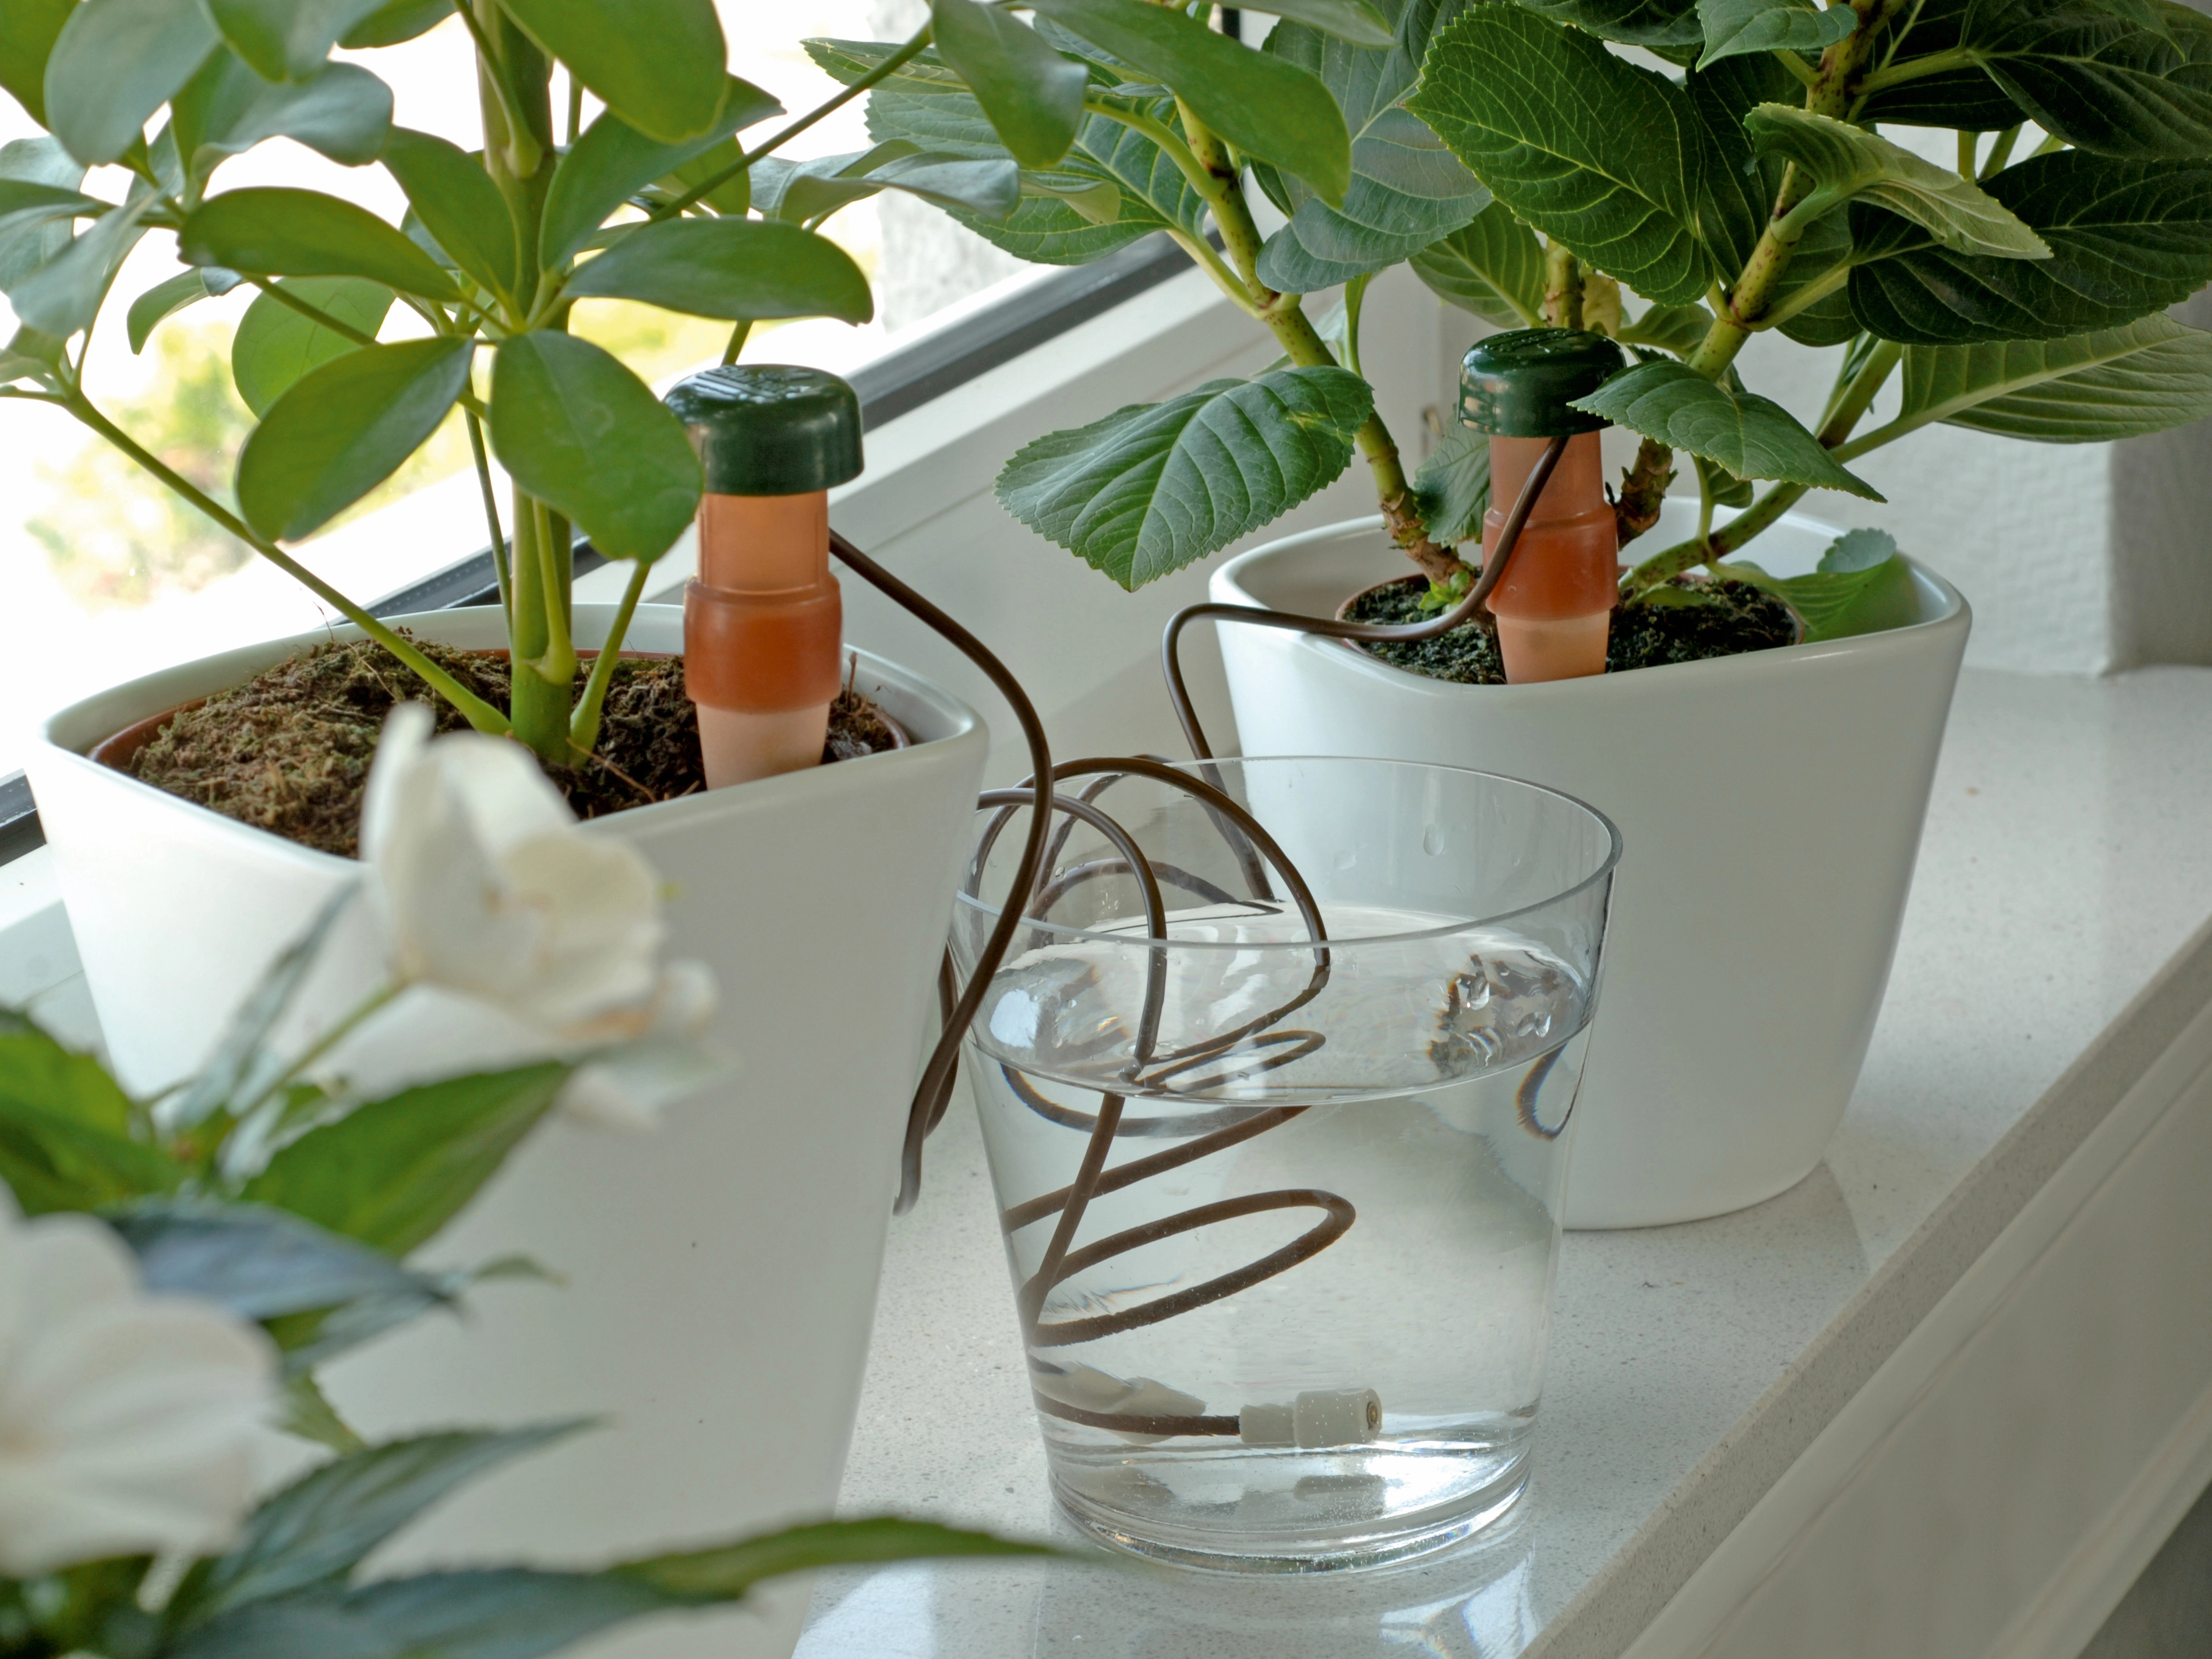 Sistema di irrigazione automatica per piante da appartamento